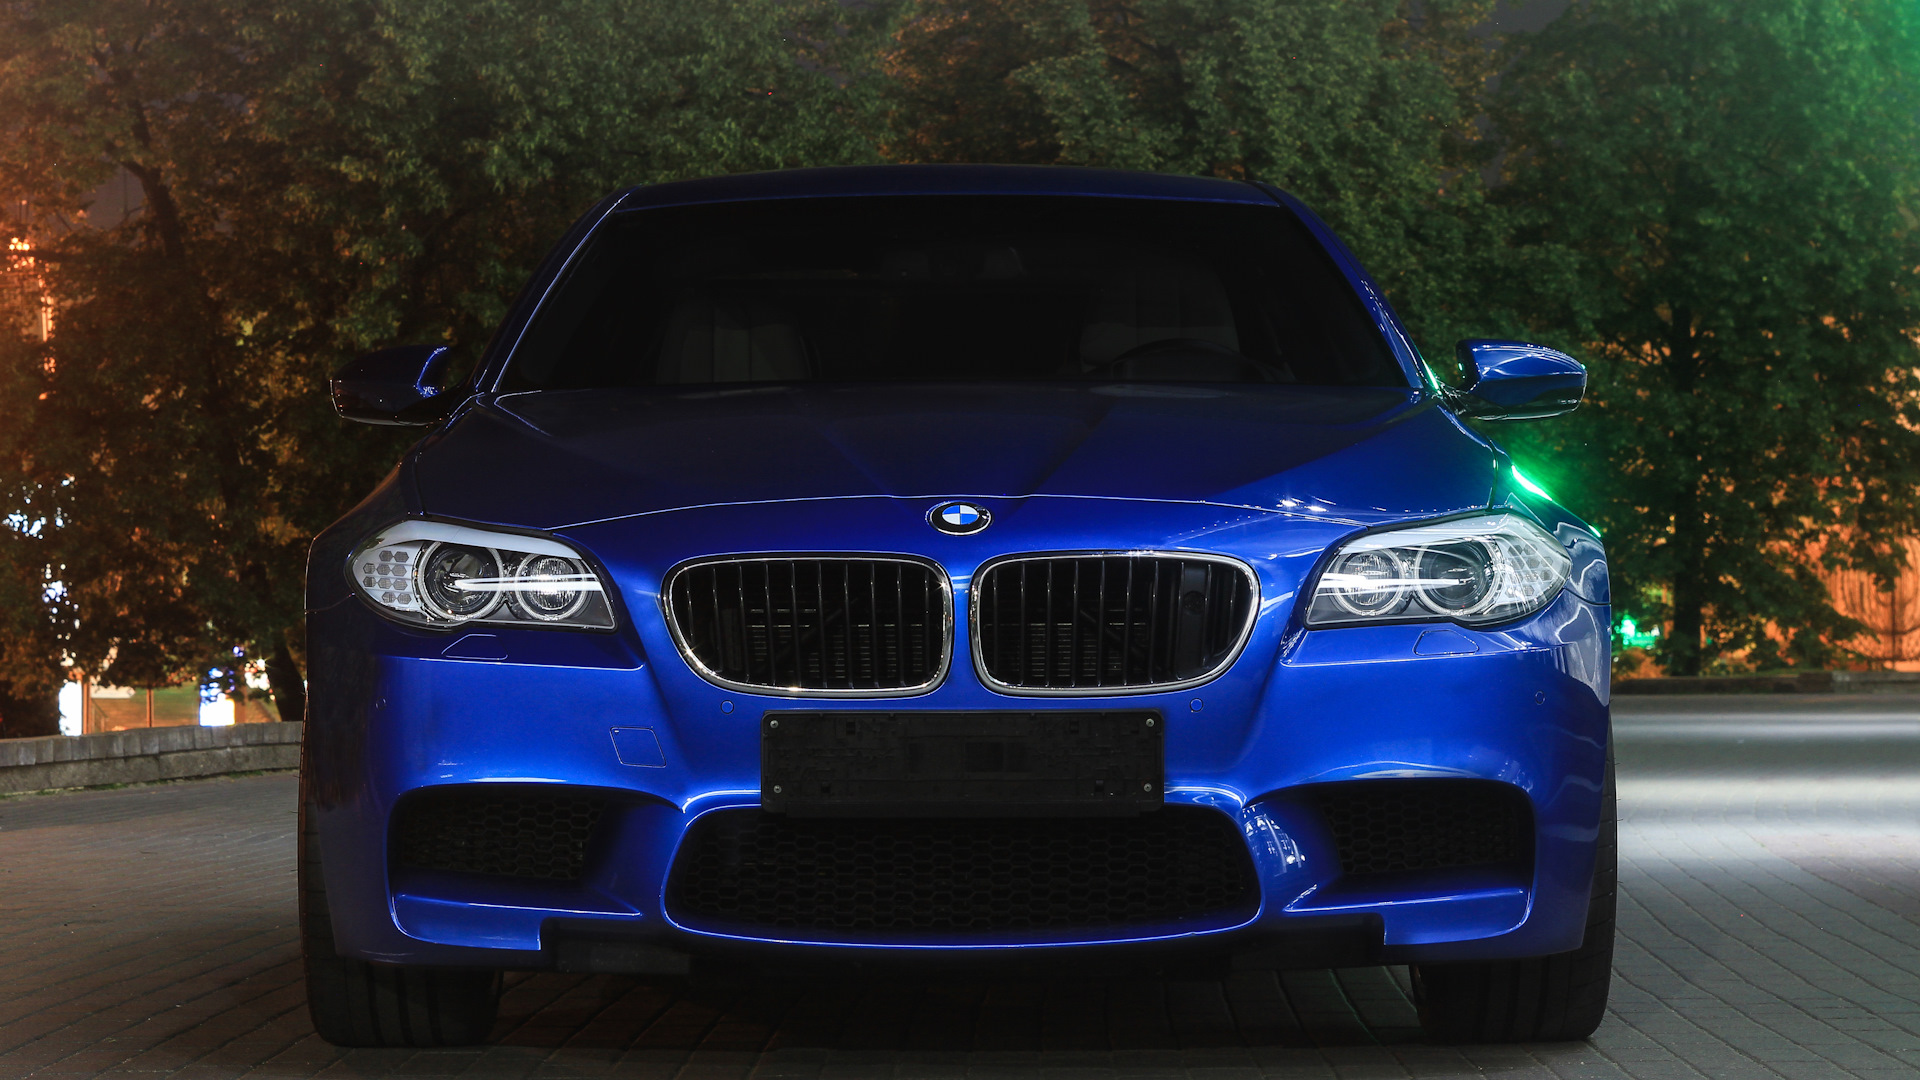 BMW m5 f10. BMW m5 f10 m5. BMW m5 f10 синяя. BMW m5 f10 Night. Синяя бмв м5